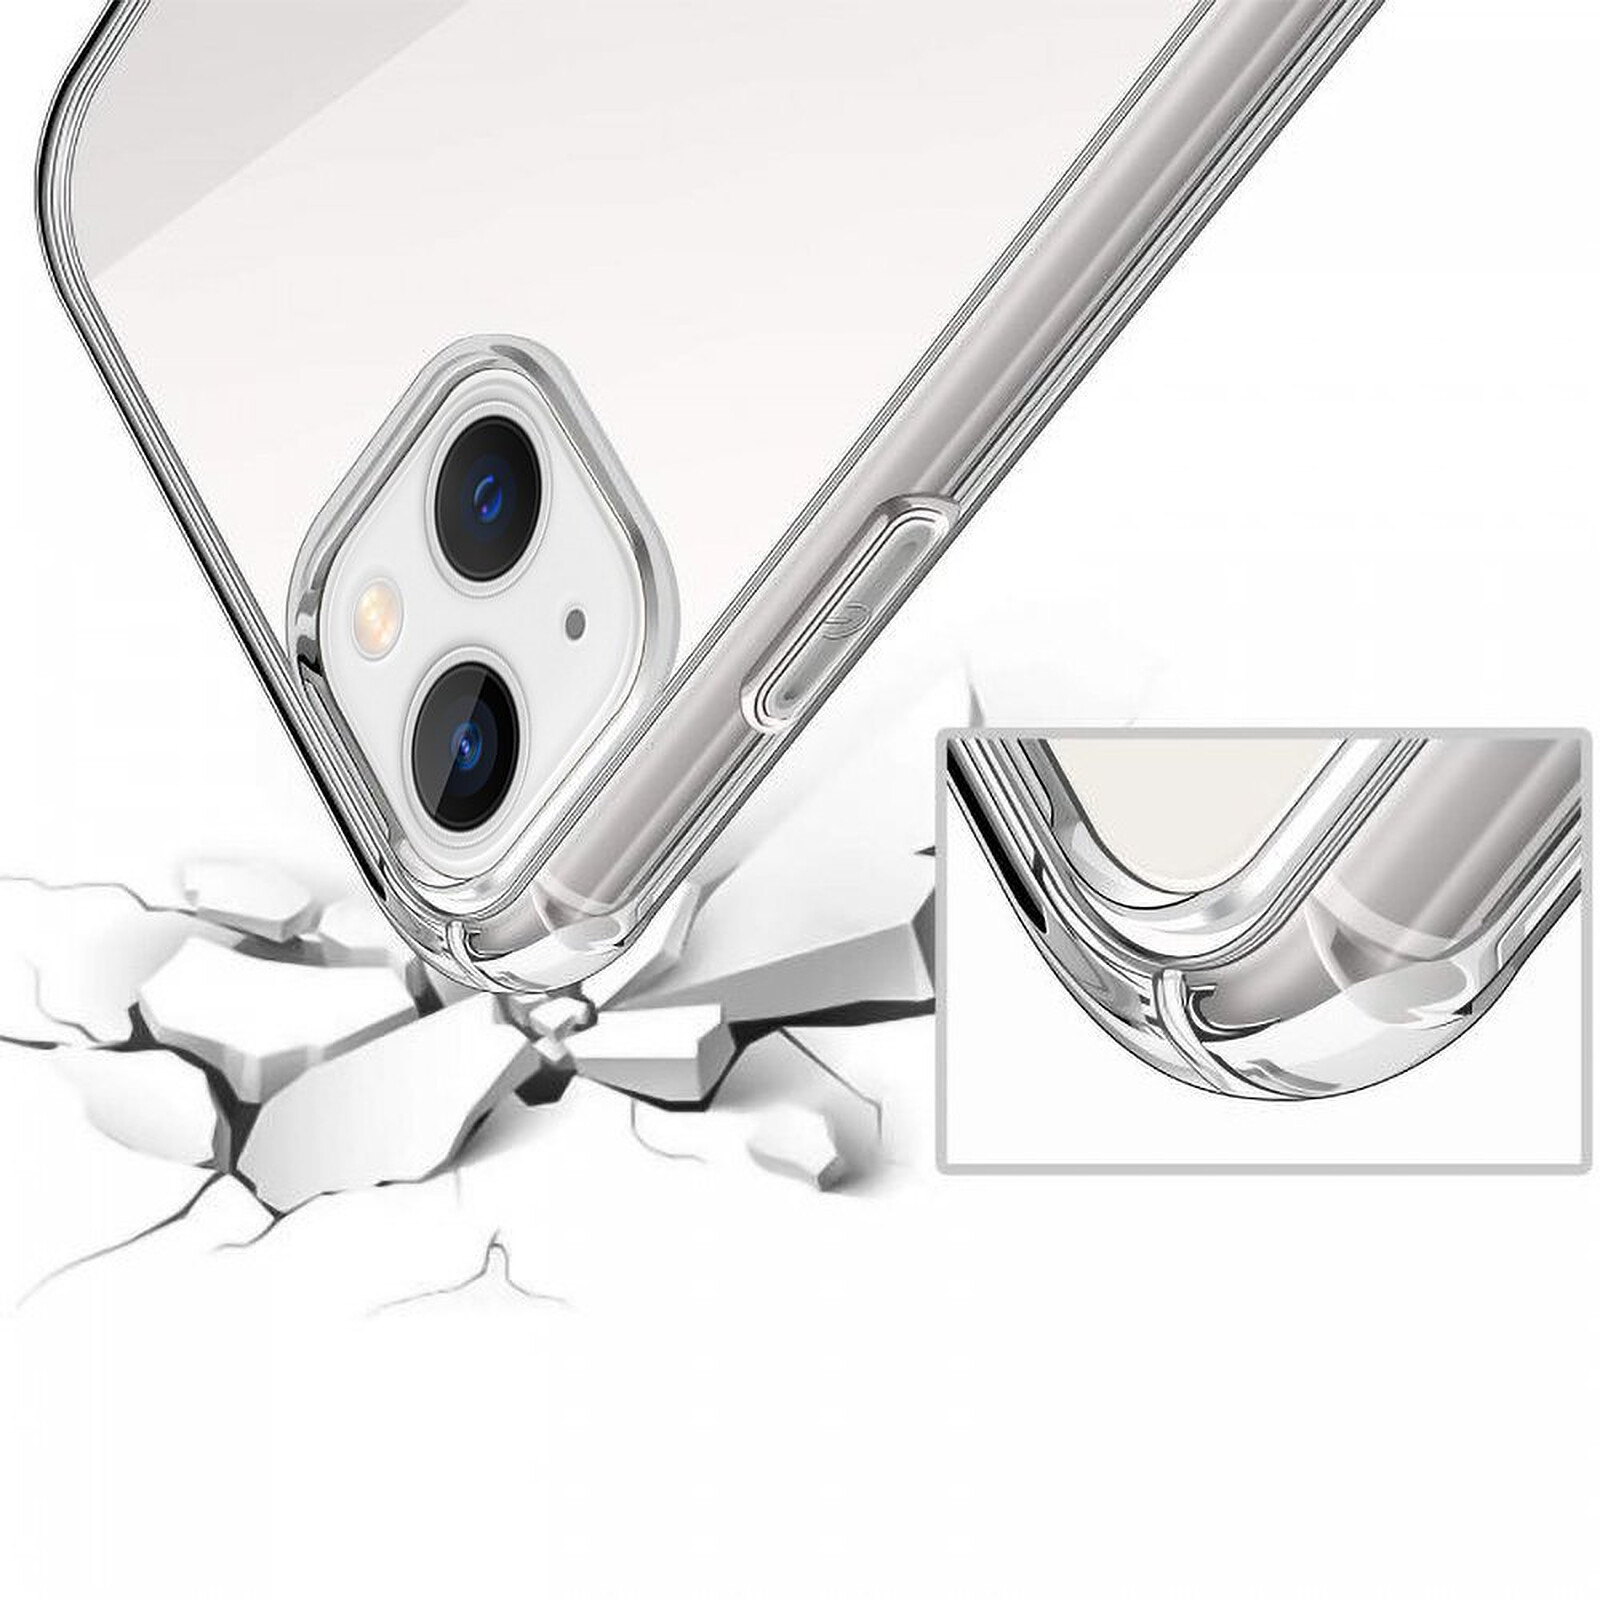 Protection d'écran iPhone 11 Pro Max Olixar Full Cover en verre trempé